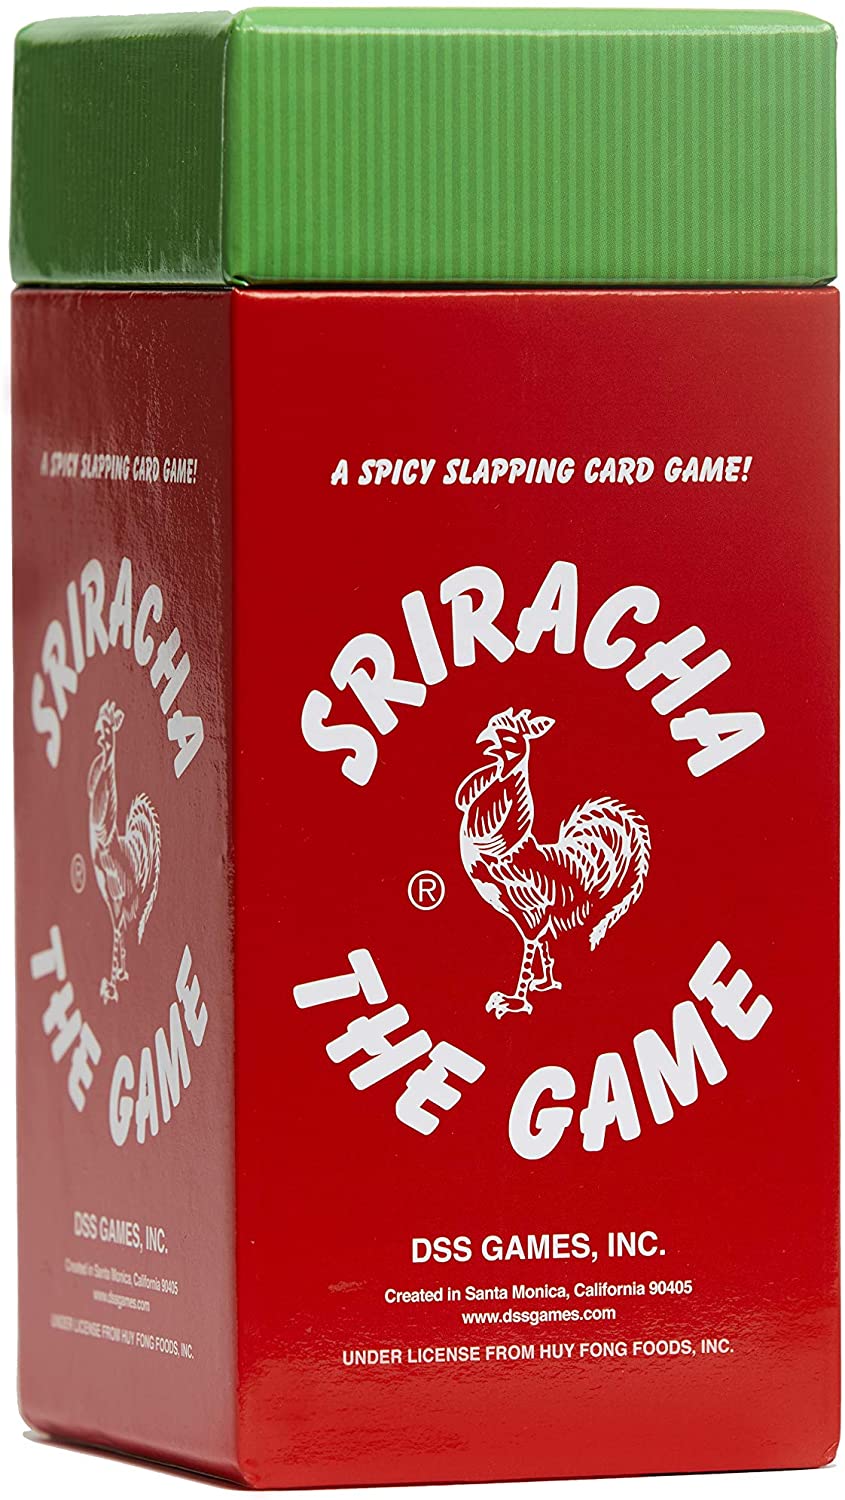 SRIRACHA THE GAME!